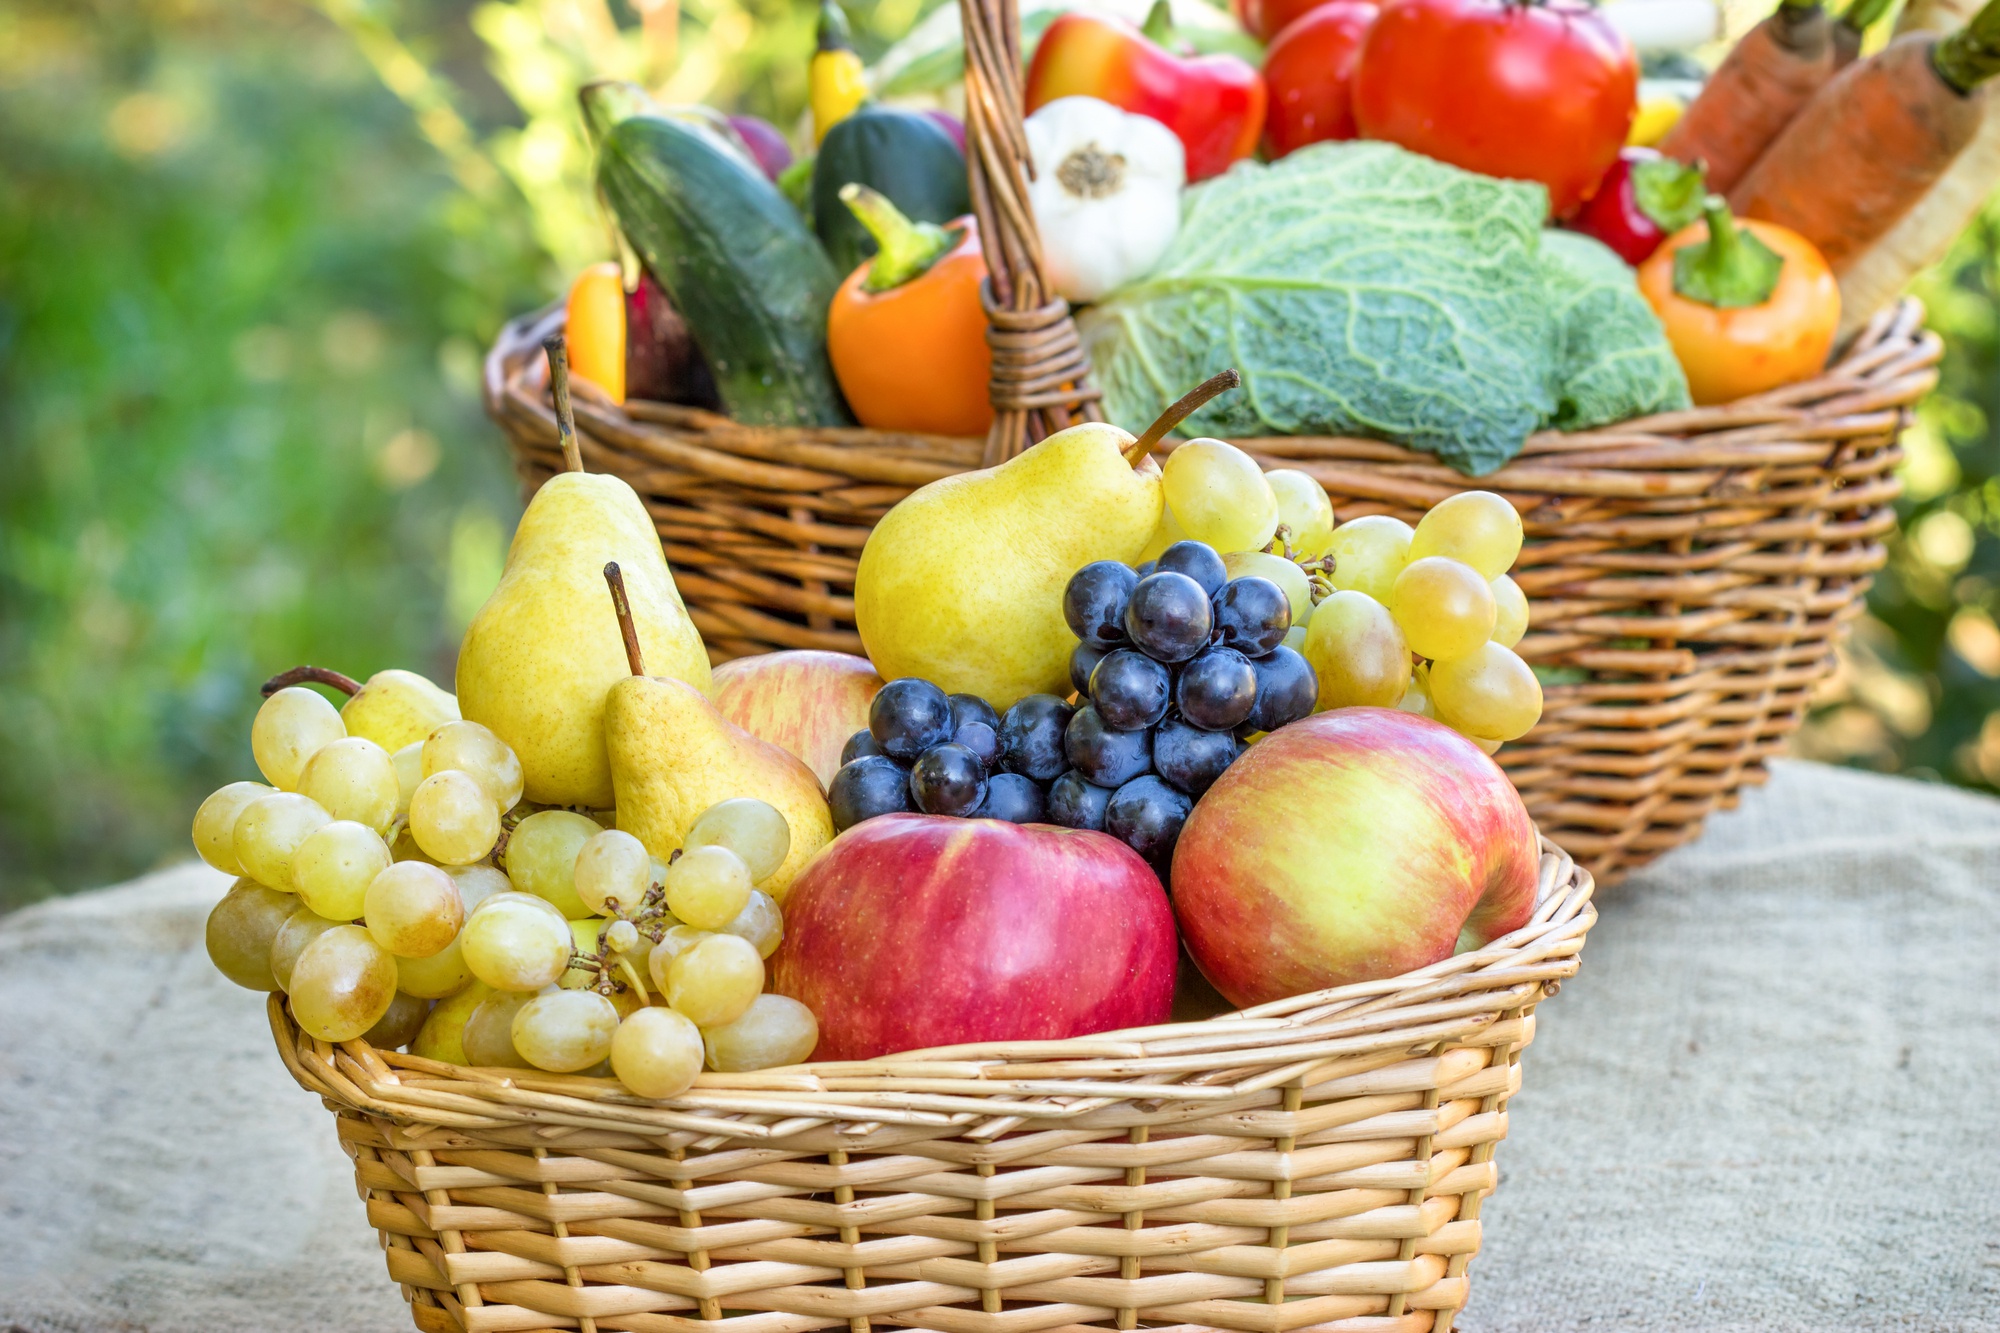 Free download wallpaper Fruits, Food, Apple, Grapes, Basket, Vegetable, Pear, Fruits & Vegetables on your PC desktop